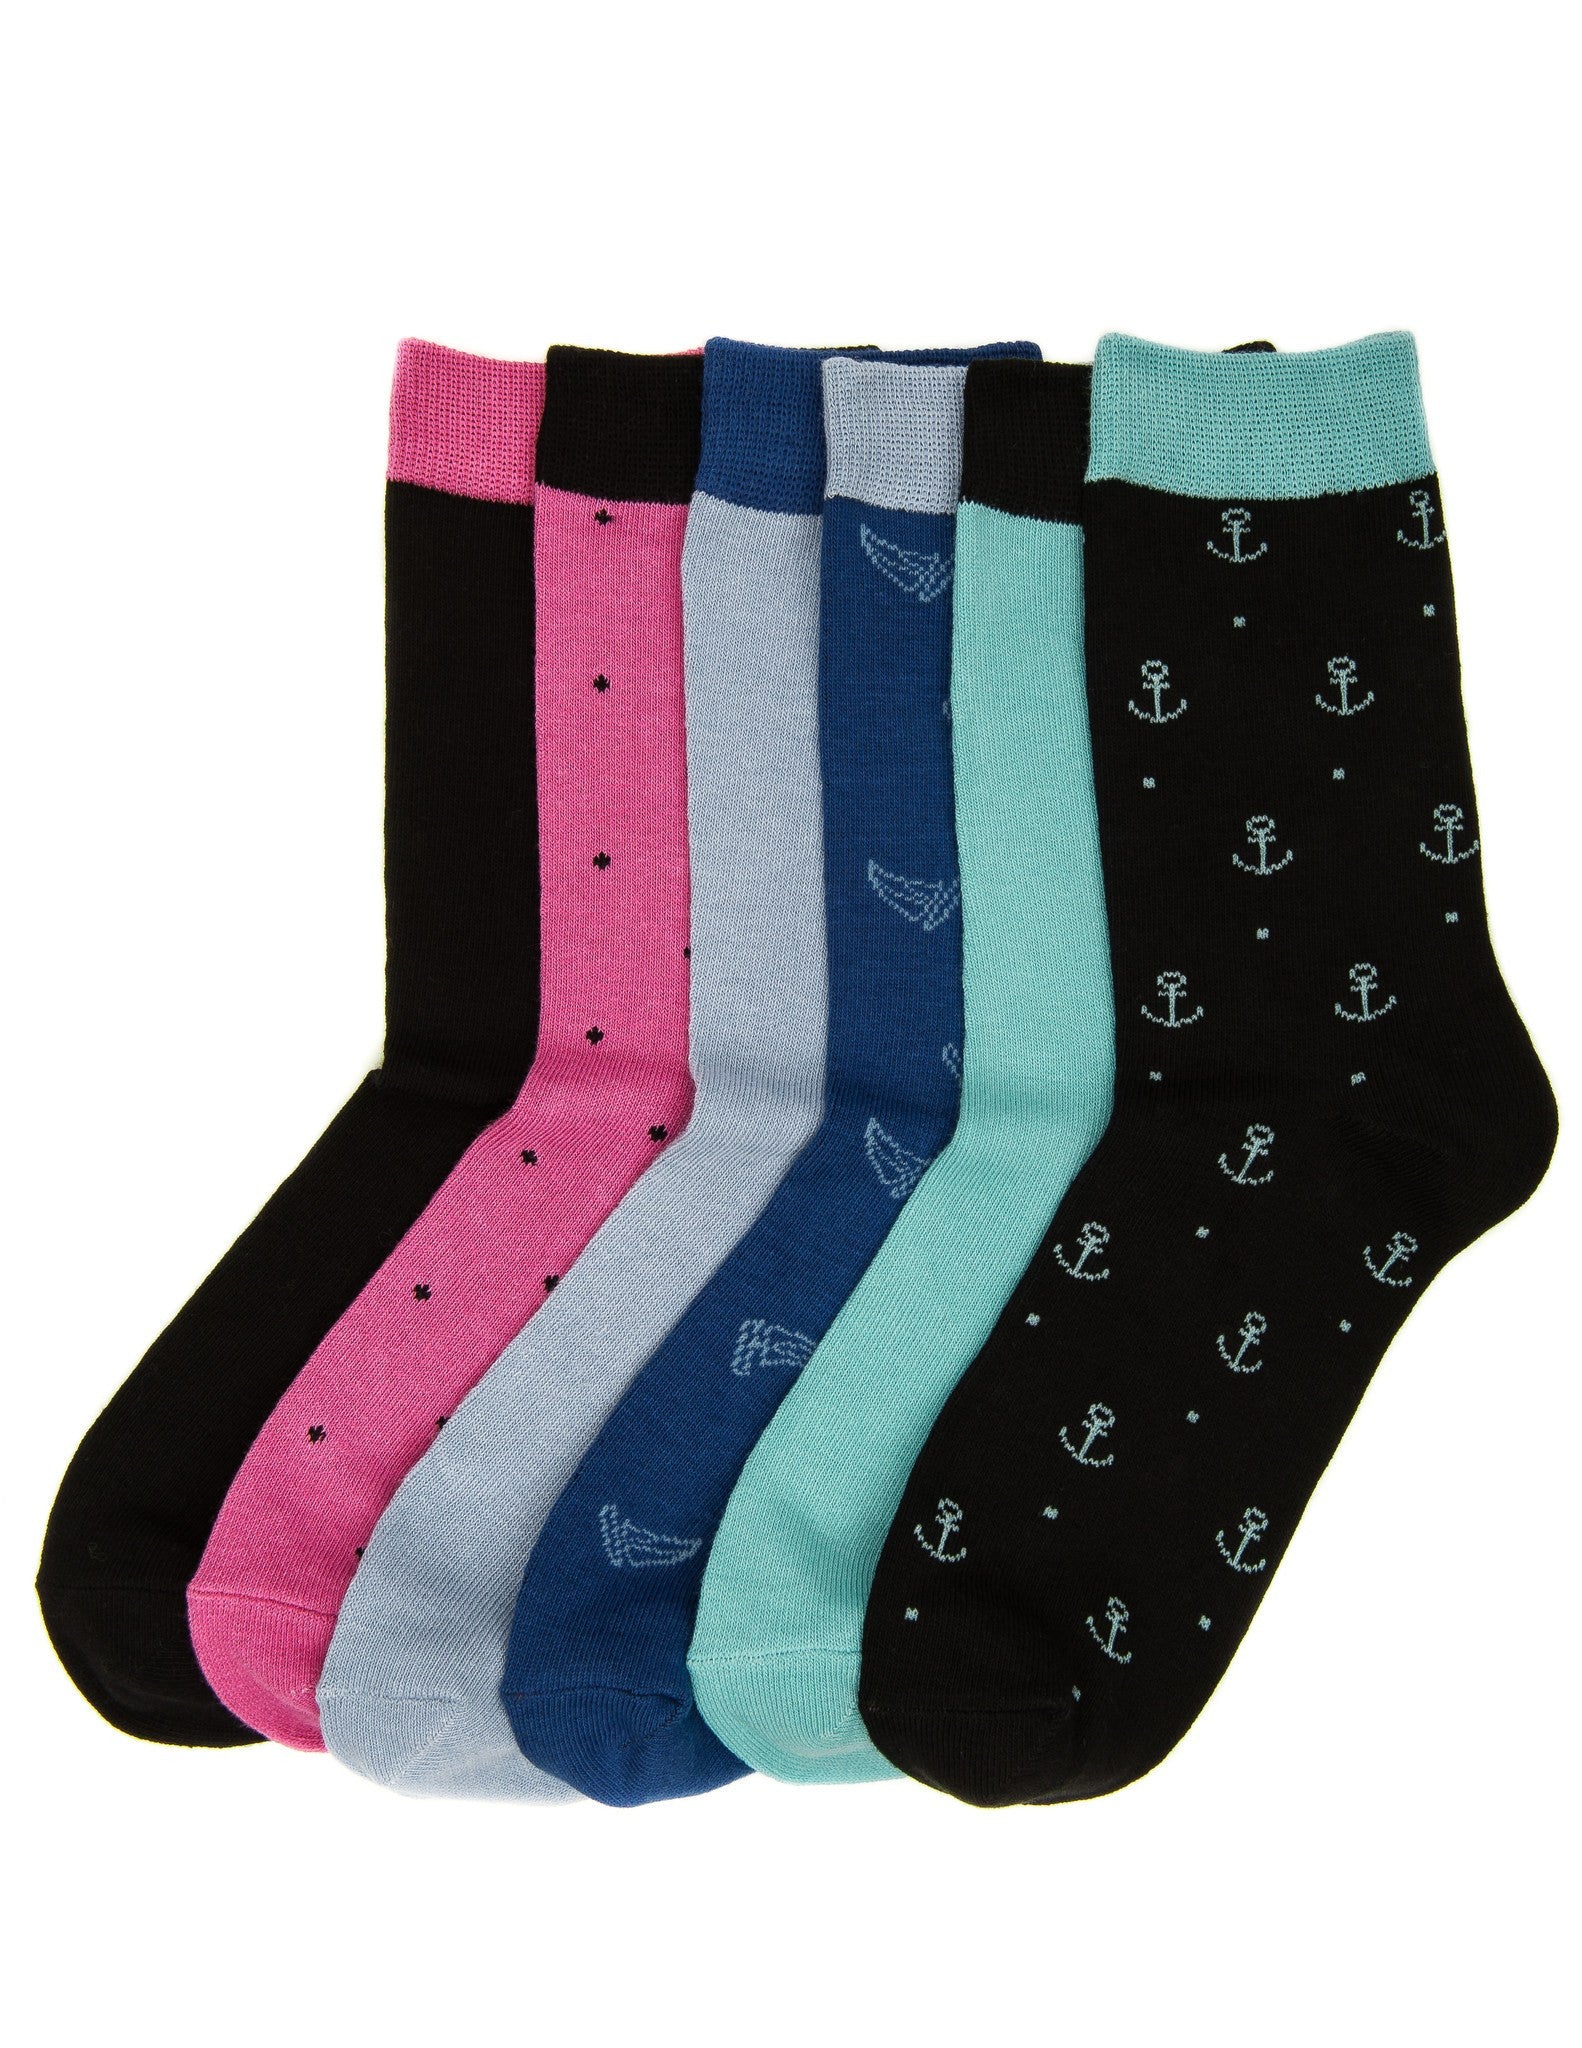 Noble Mount Women's Combed Cotton Premium Crew Socks